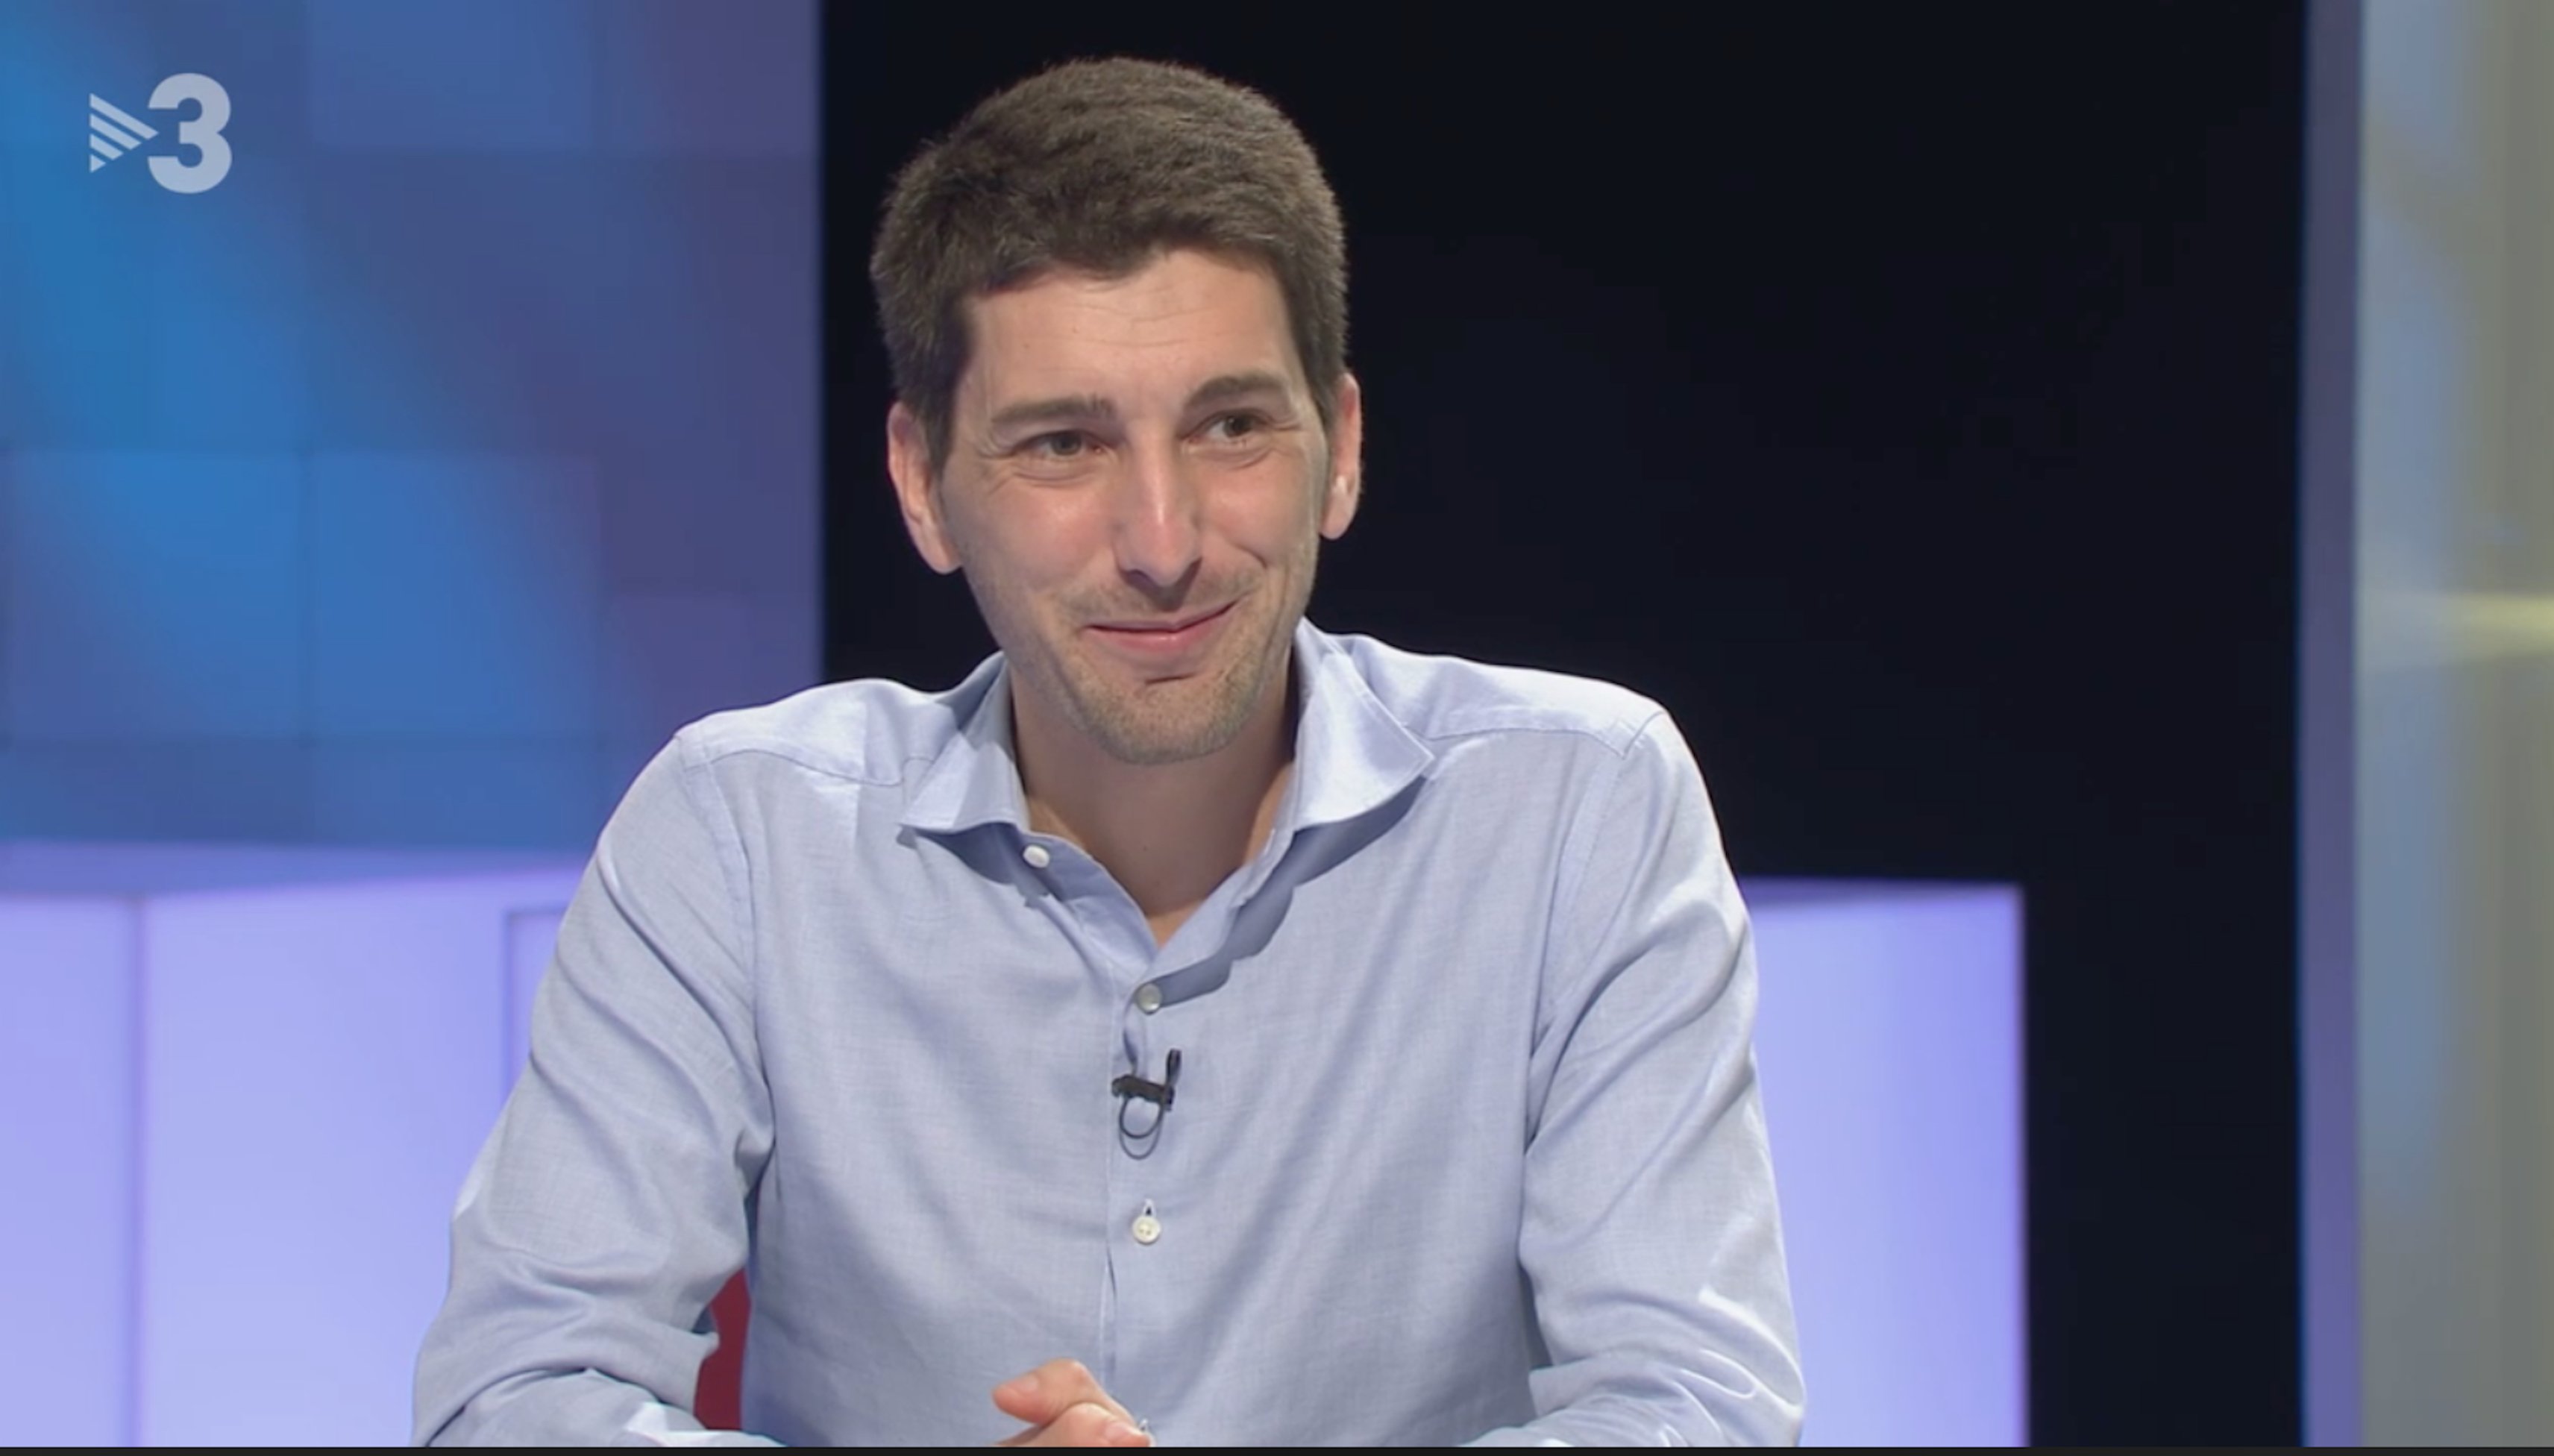 Oriol Mitjà, a TV3: "crec que no caic bé a Madrid", la xarxa li fa costat